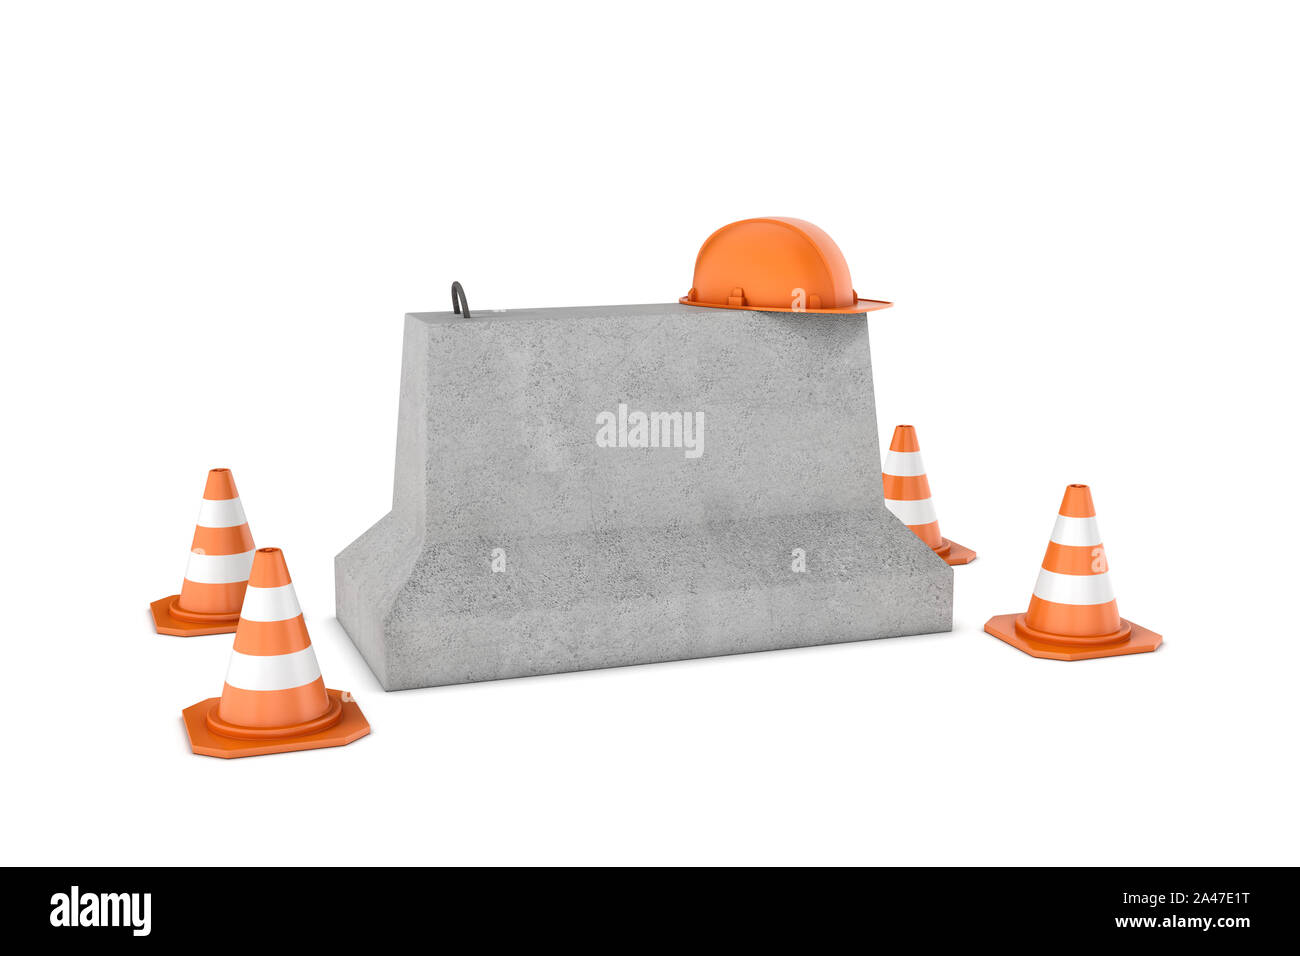 3D-Rendering von vier Bau Kegel, orange Helm auf eine konkrete Sperre, alle auf weißem Hintergrund. Verkehrszeichen. Fangvorrichtung und ausrüstu Stockfoto